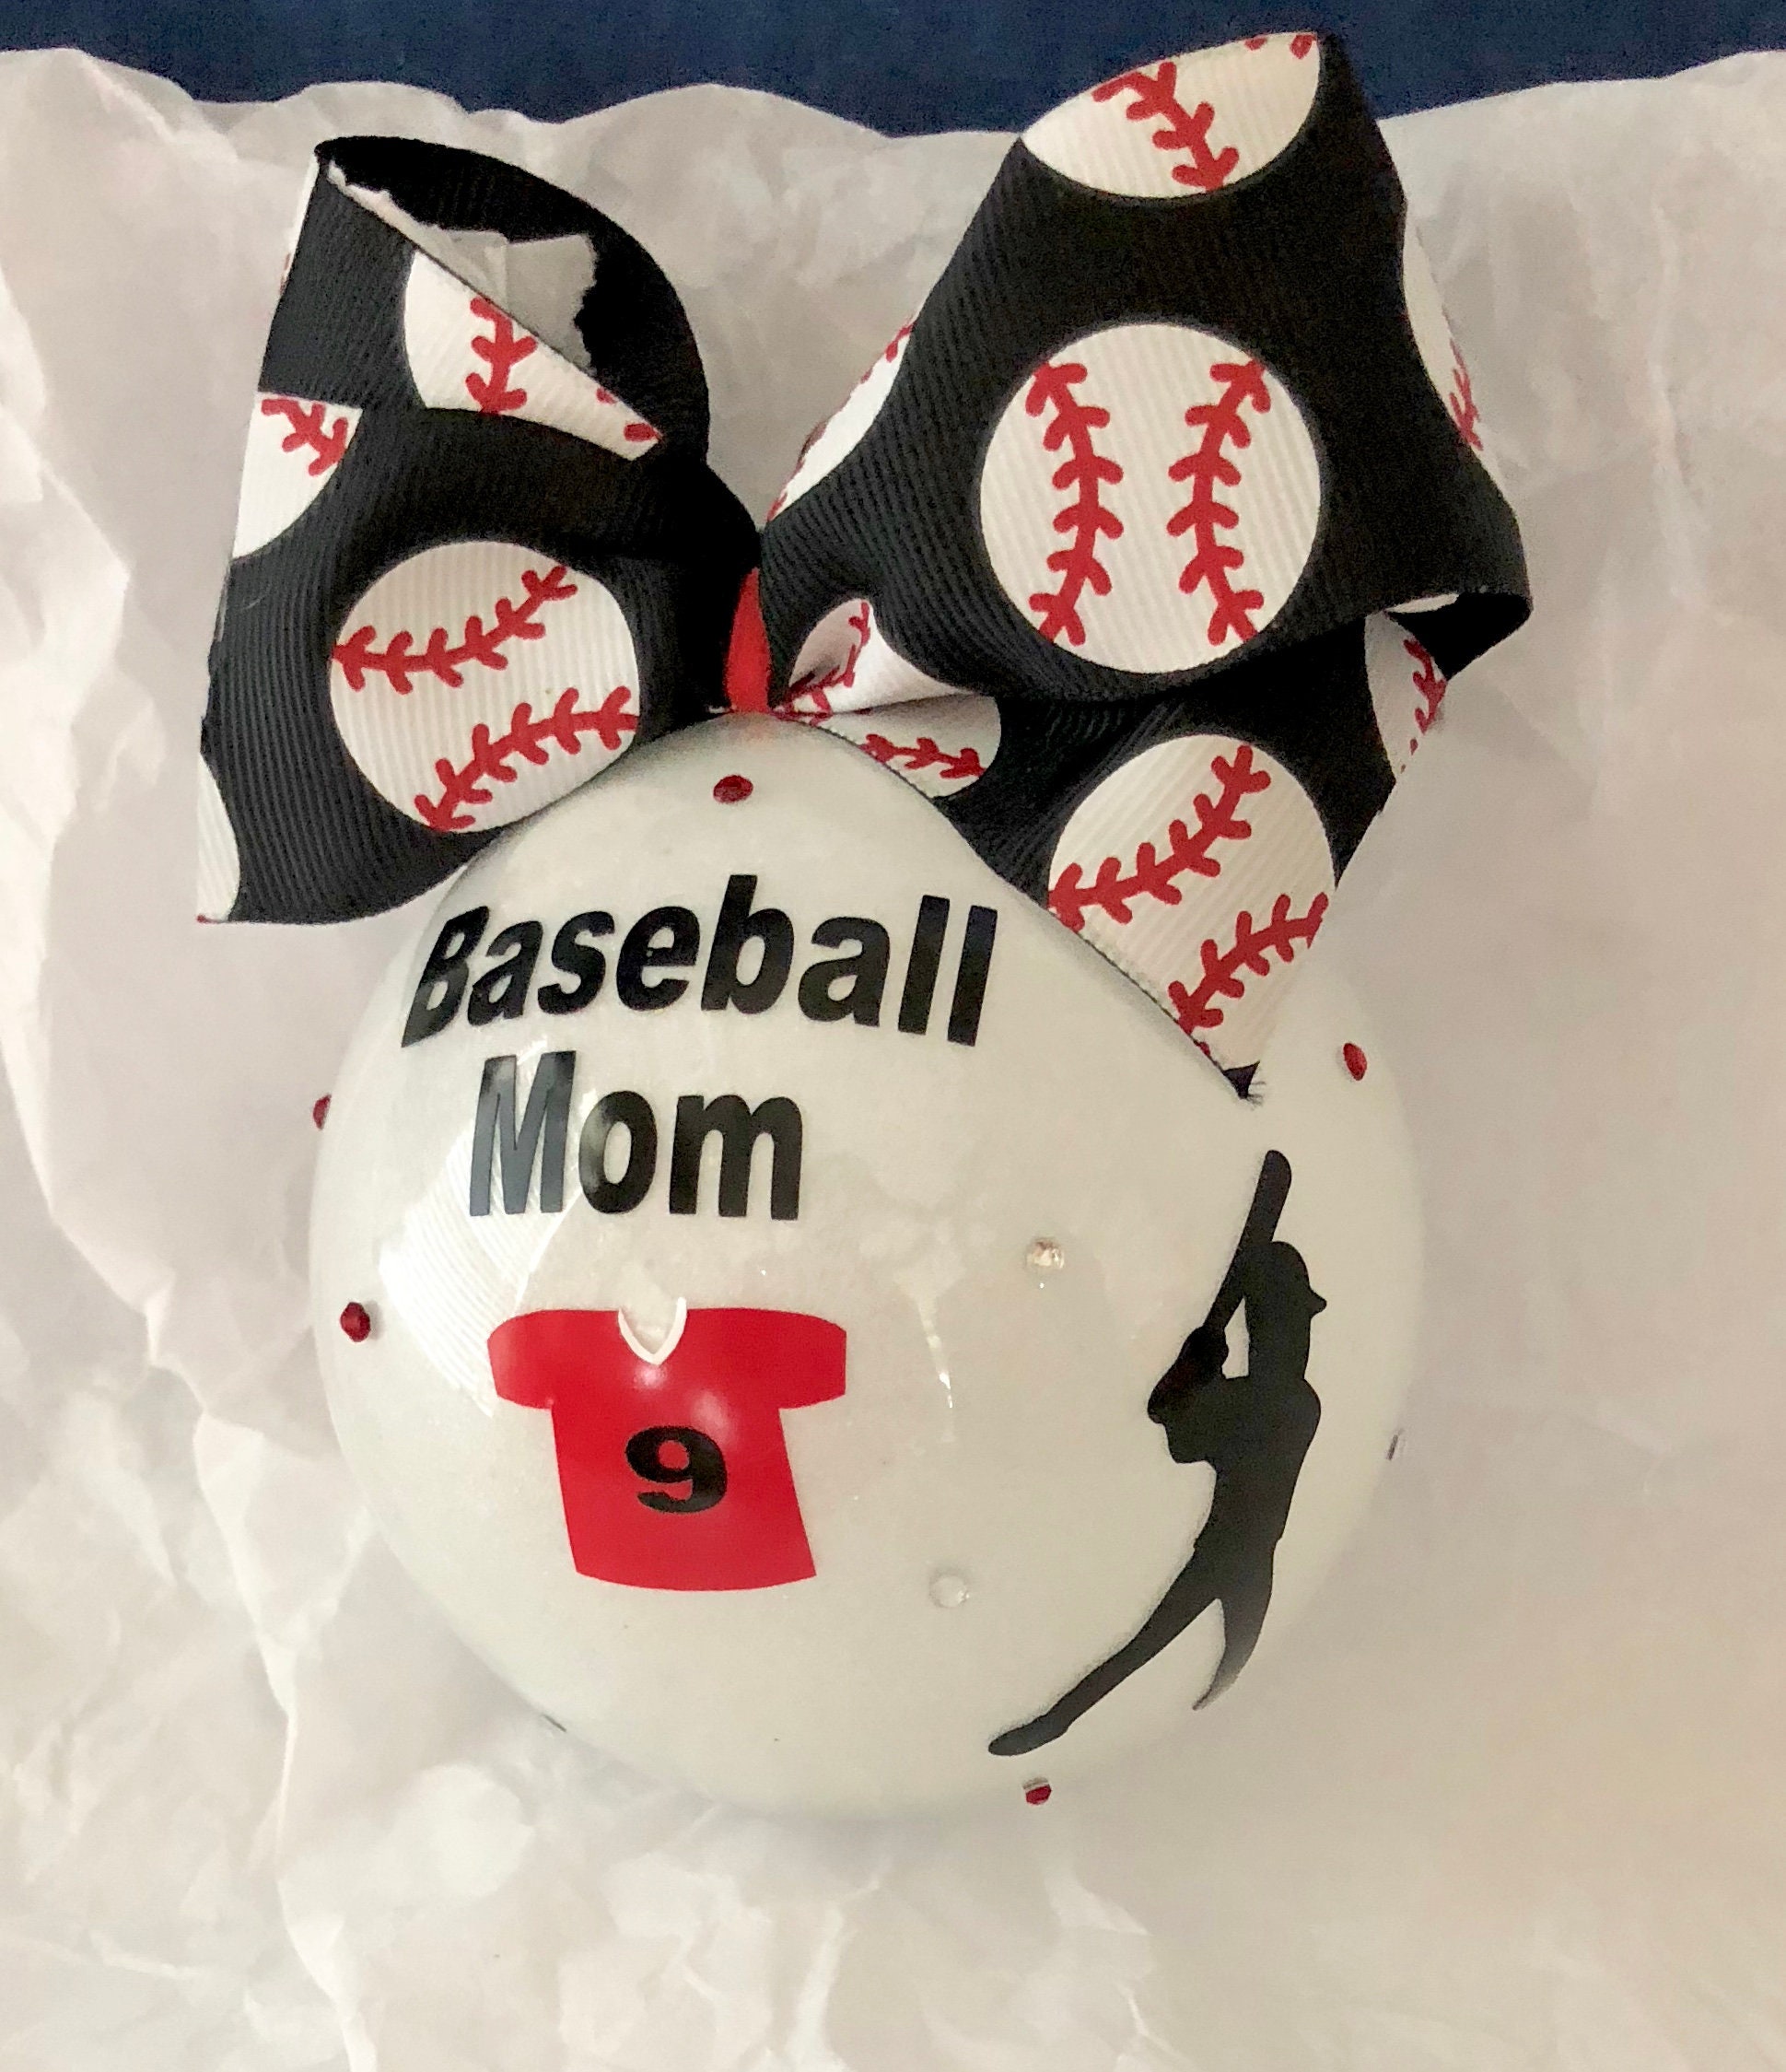 Christmas gifts for softball players